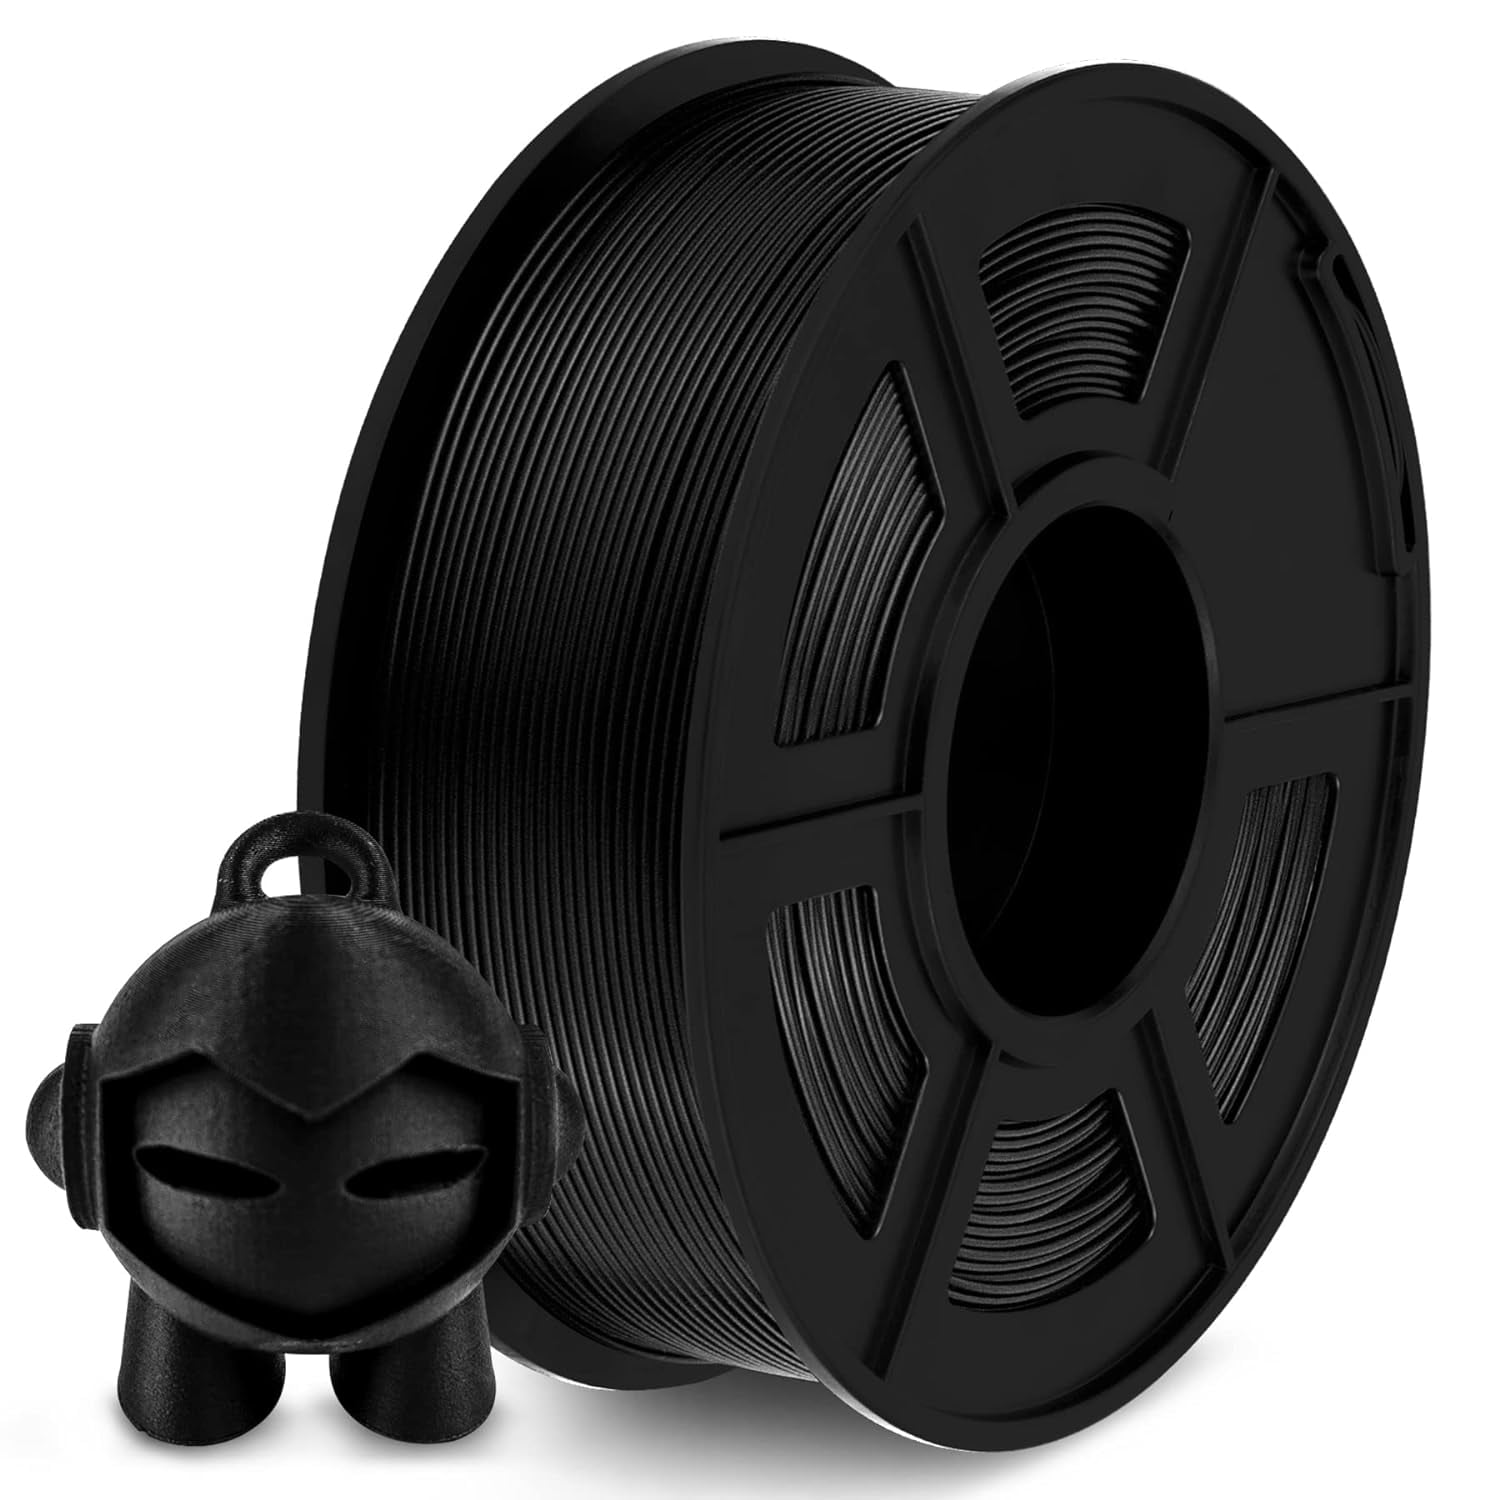 SUNLU 1.75mm PLA Carbon Fiber 3D Printing Filament 1kg/2.2lbs